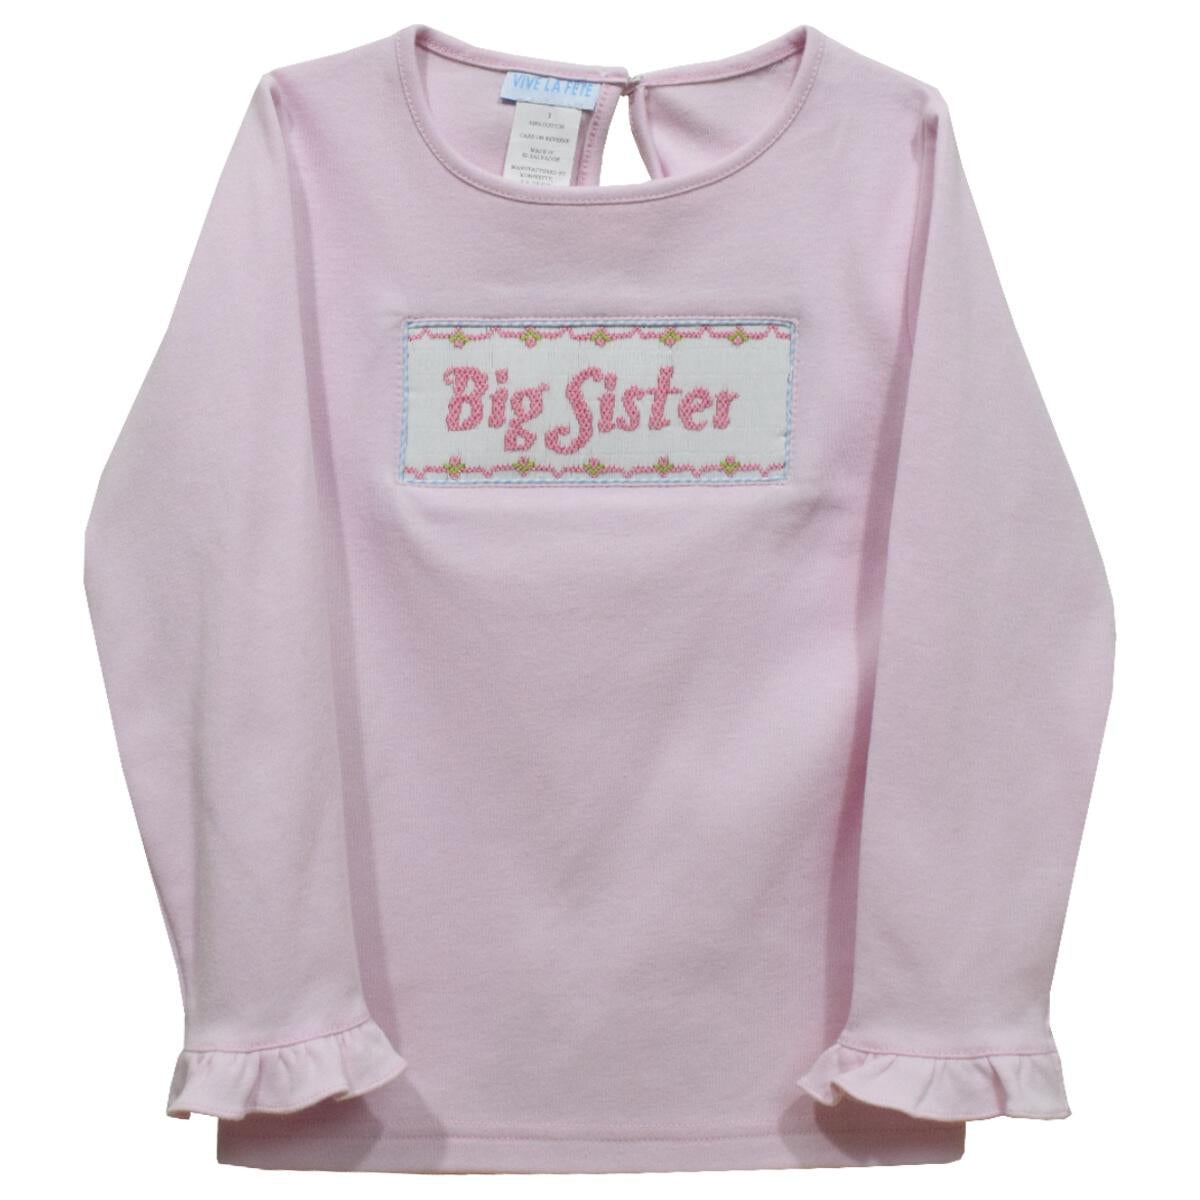 Big sister ls shirt